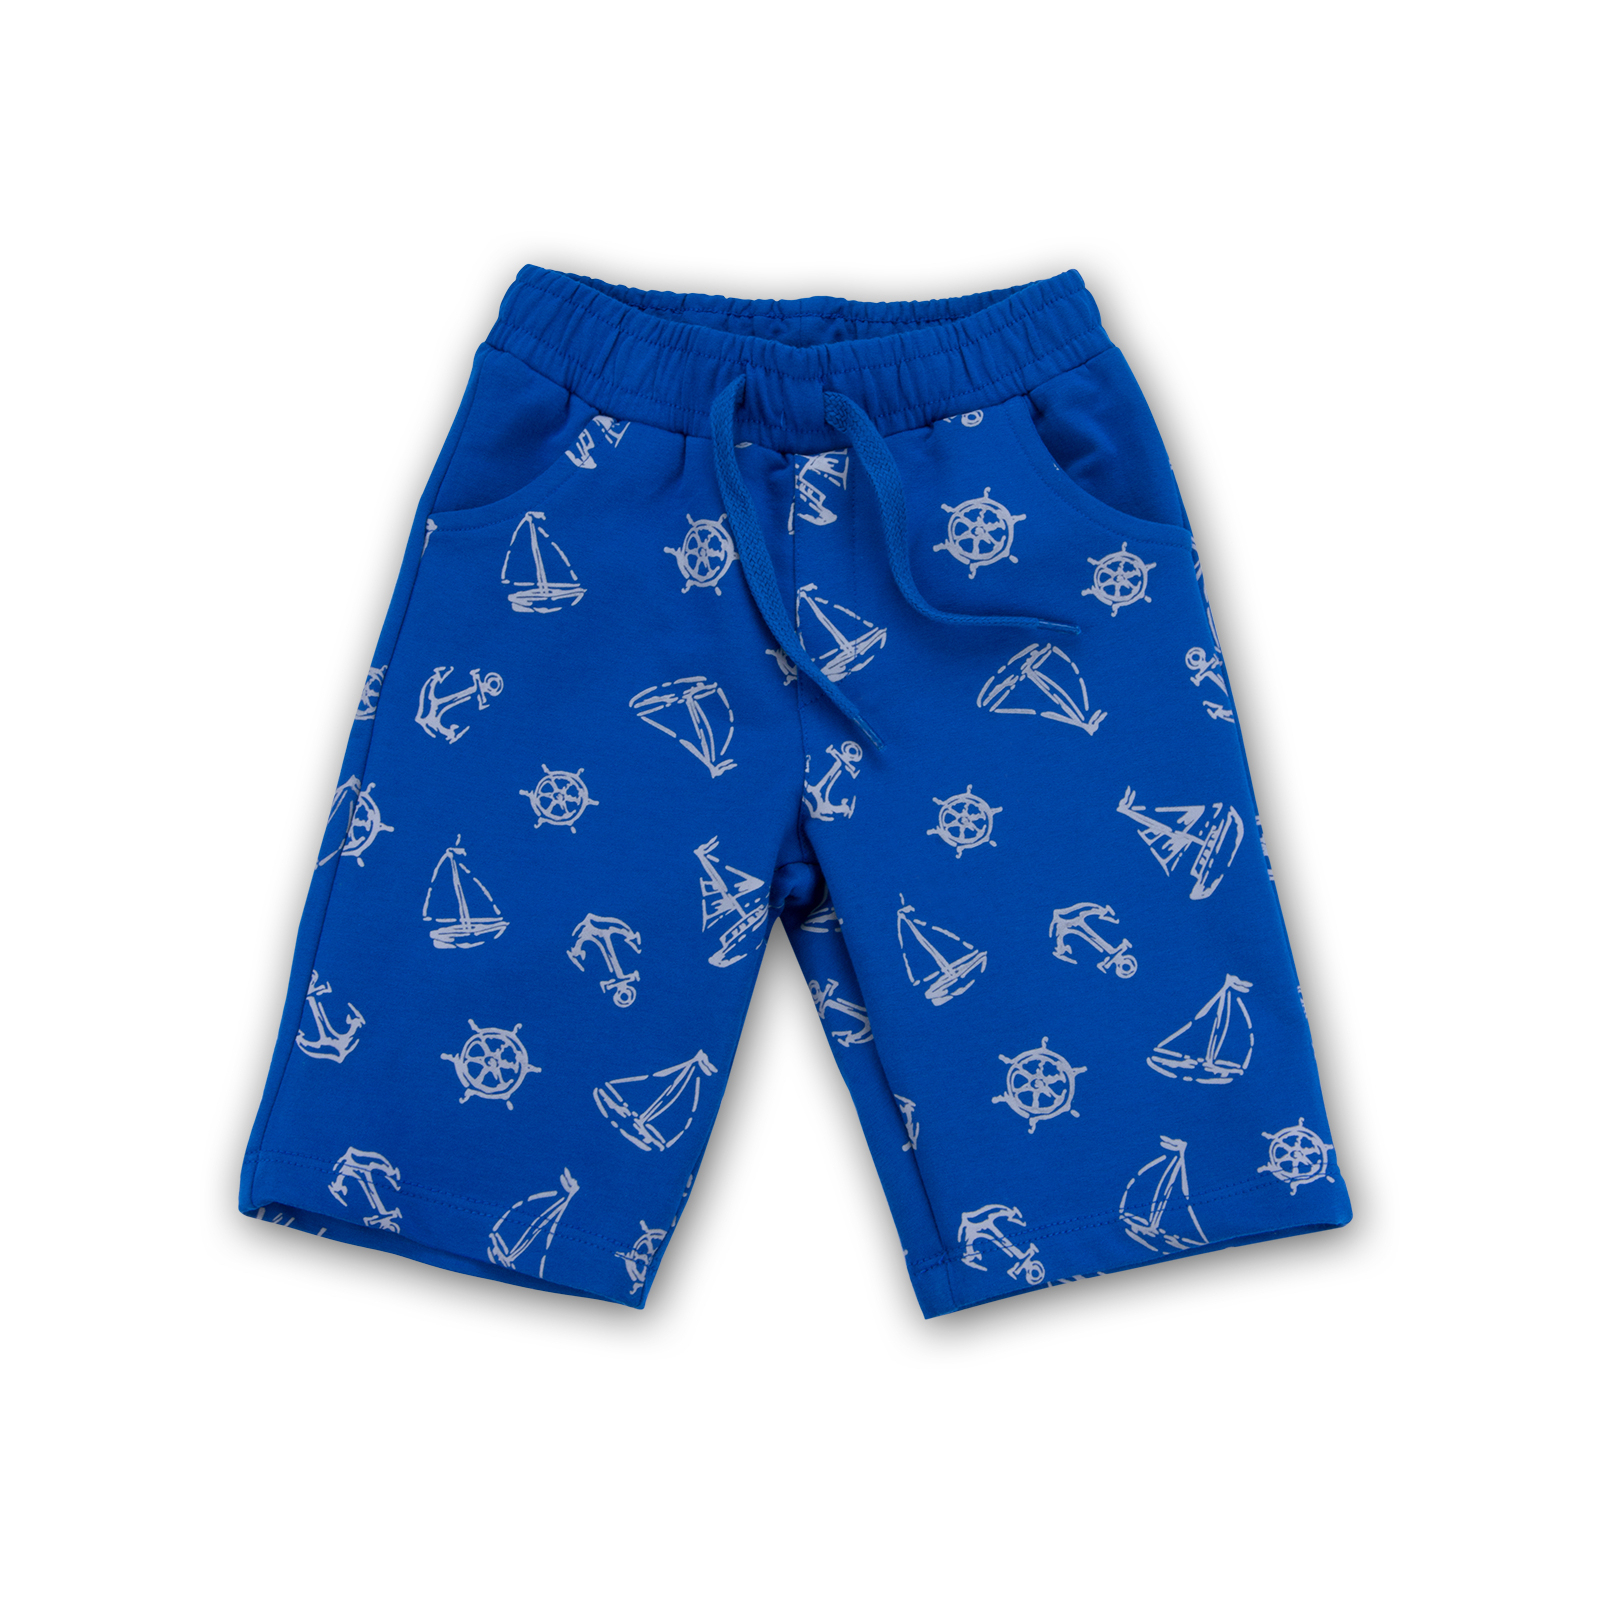 Набор детской одежды E&H с корабликами "I'm the captain" (8306-116B-blue) изображение 3